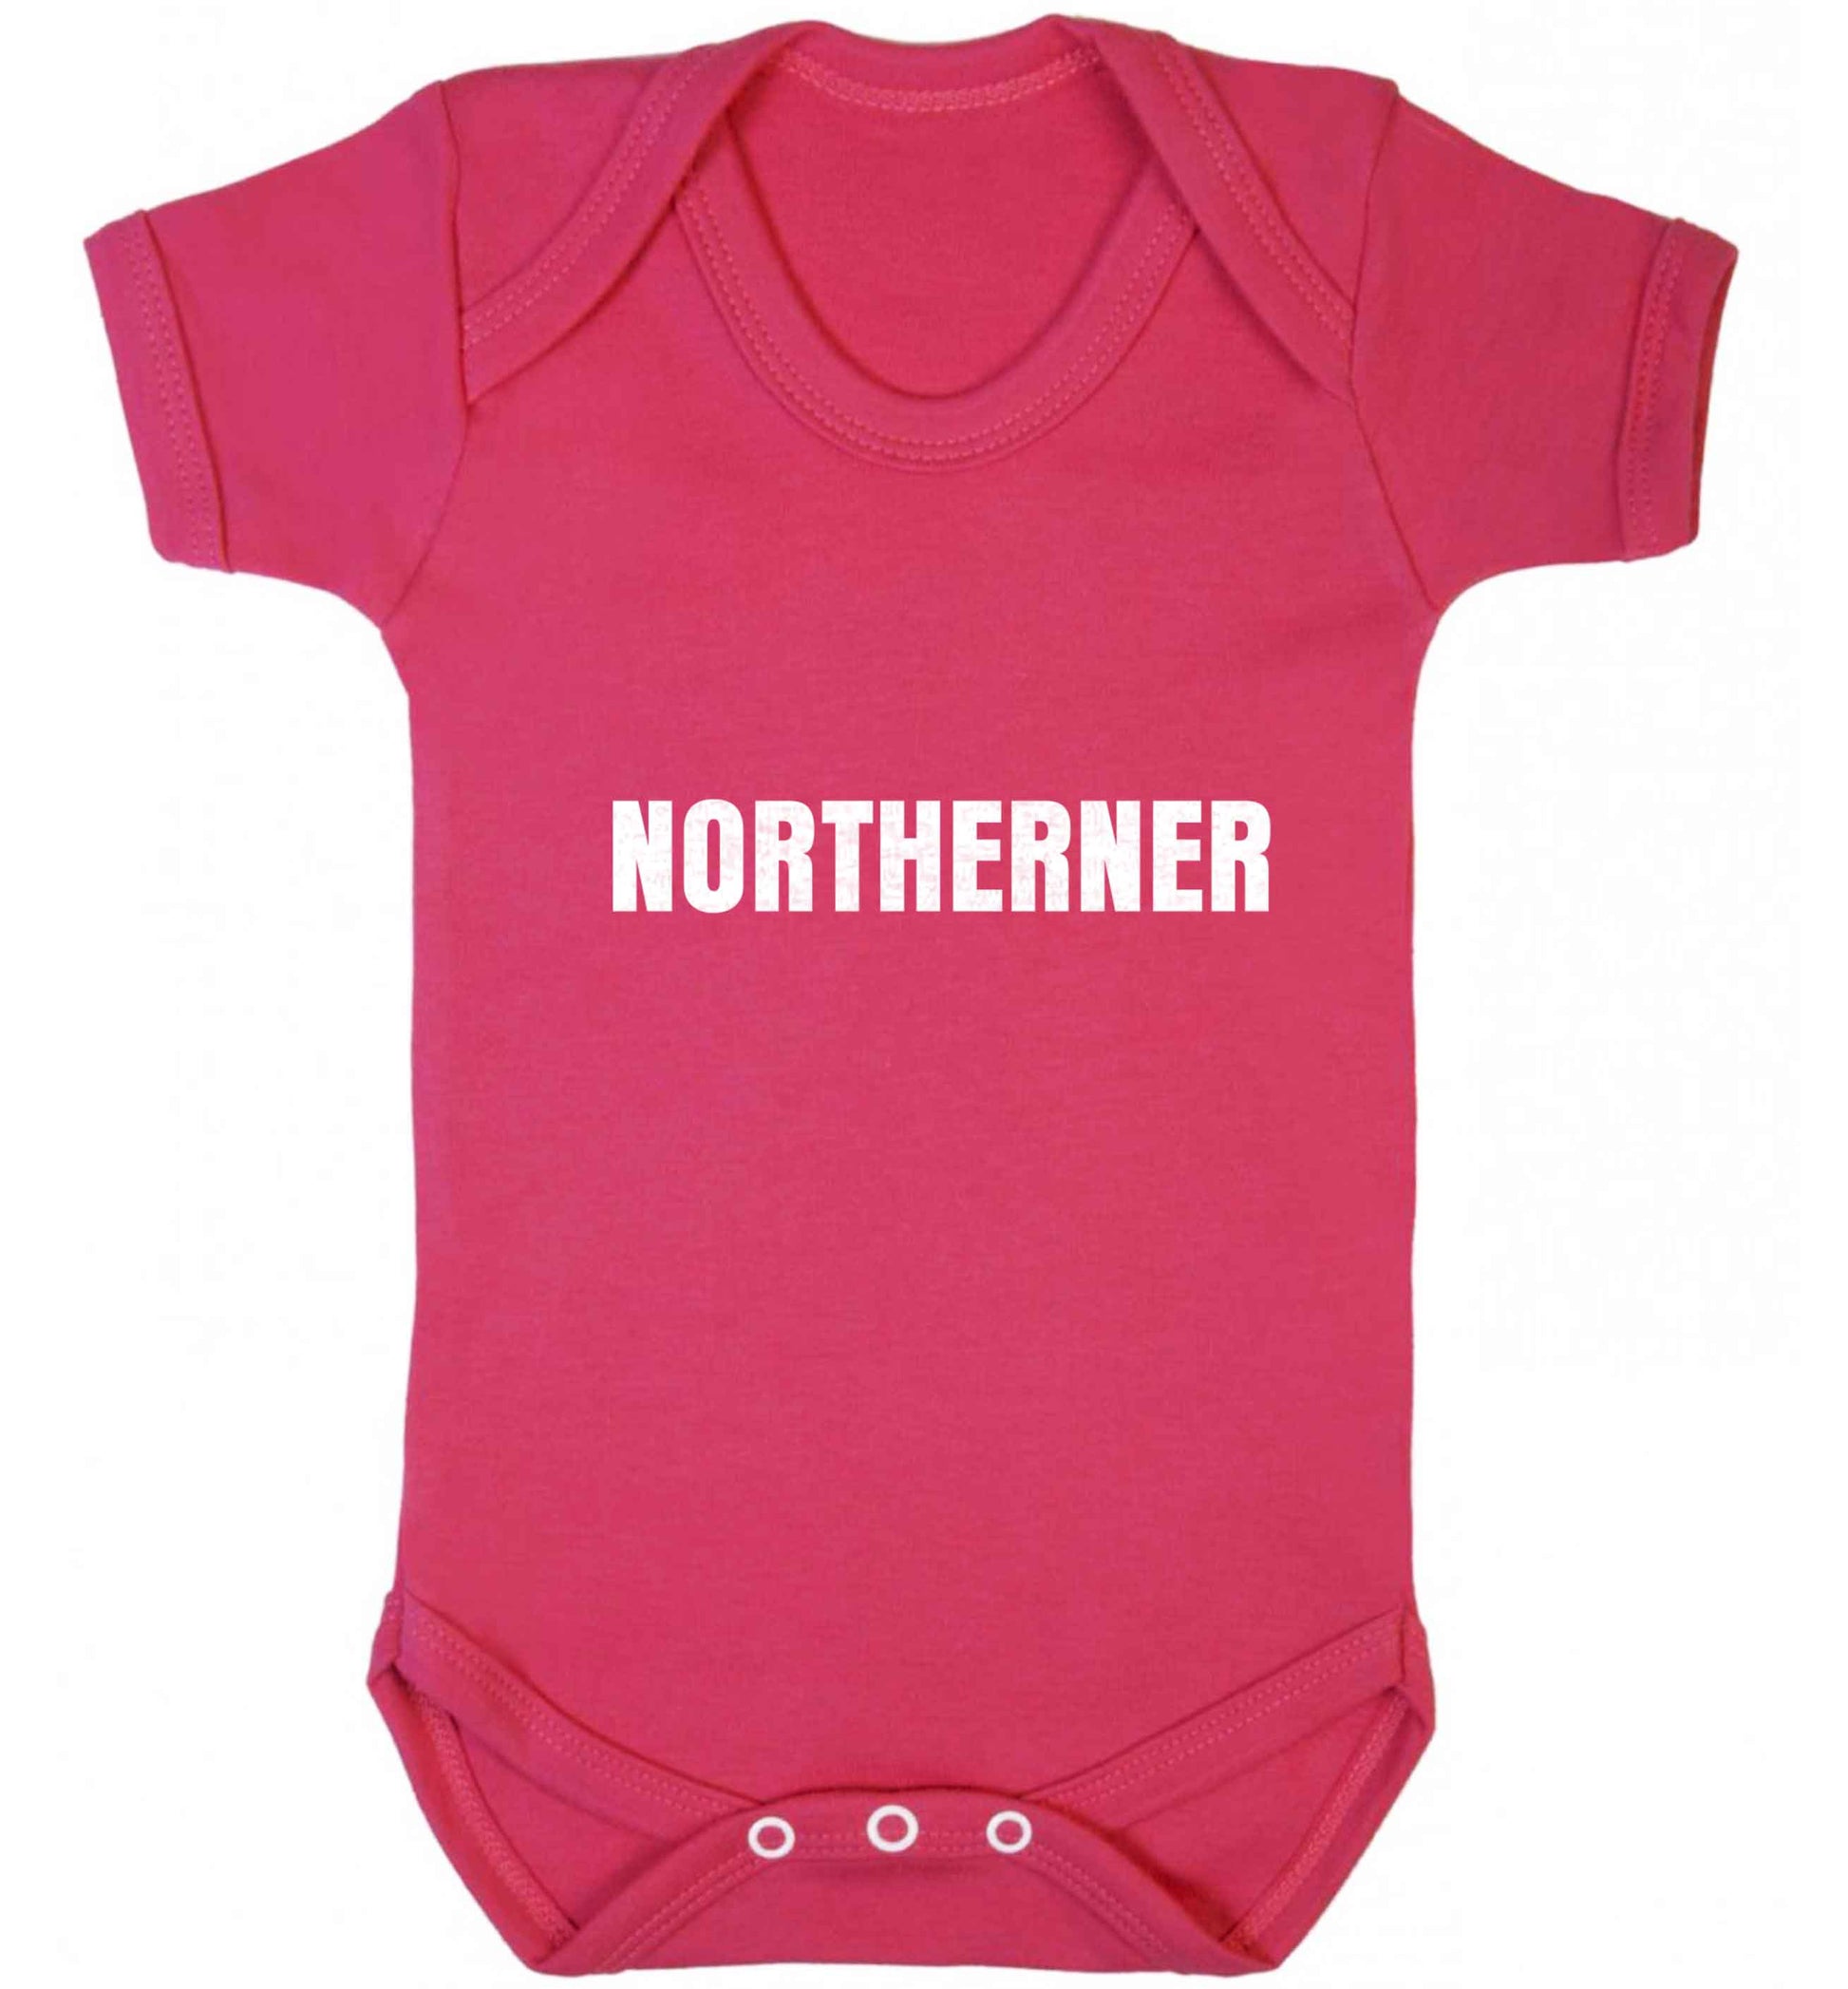 Northerner baby vest dark pink 18-24 months